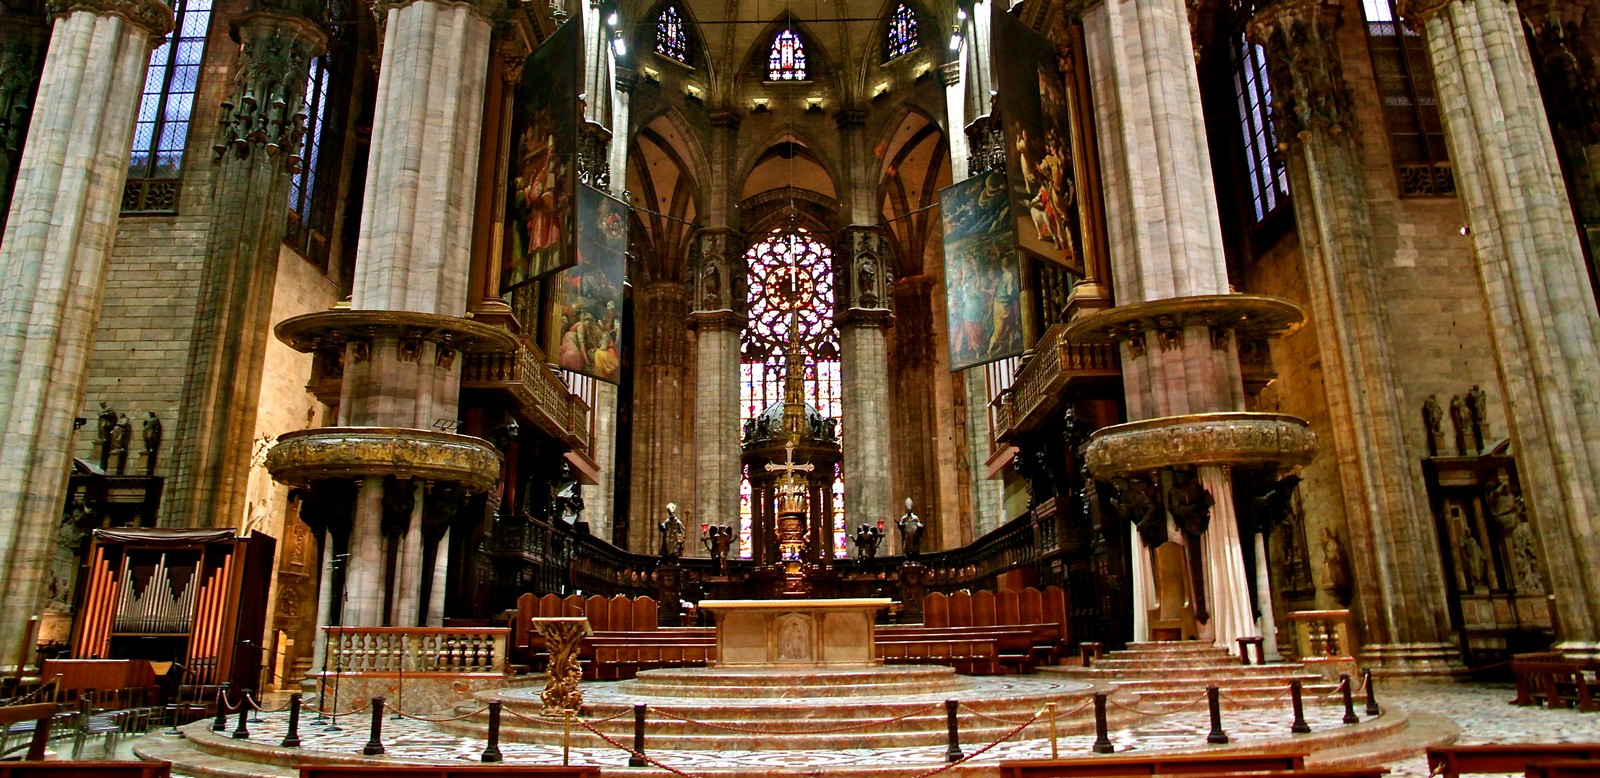 Dedicado a la Virgen María: el Duomo de Milan, Italia